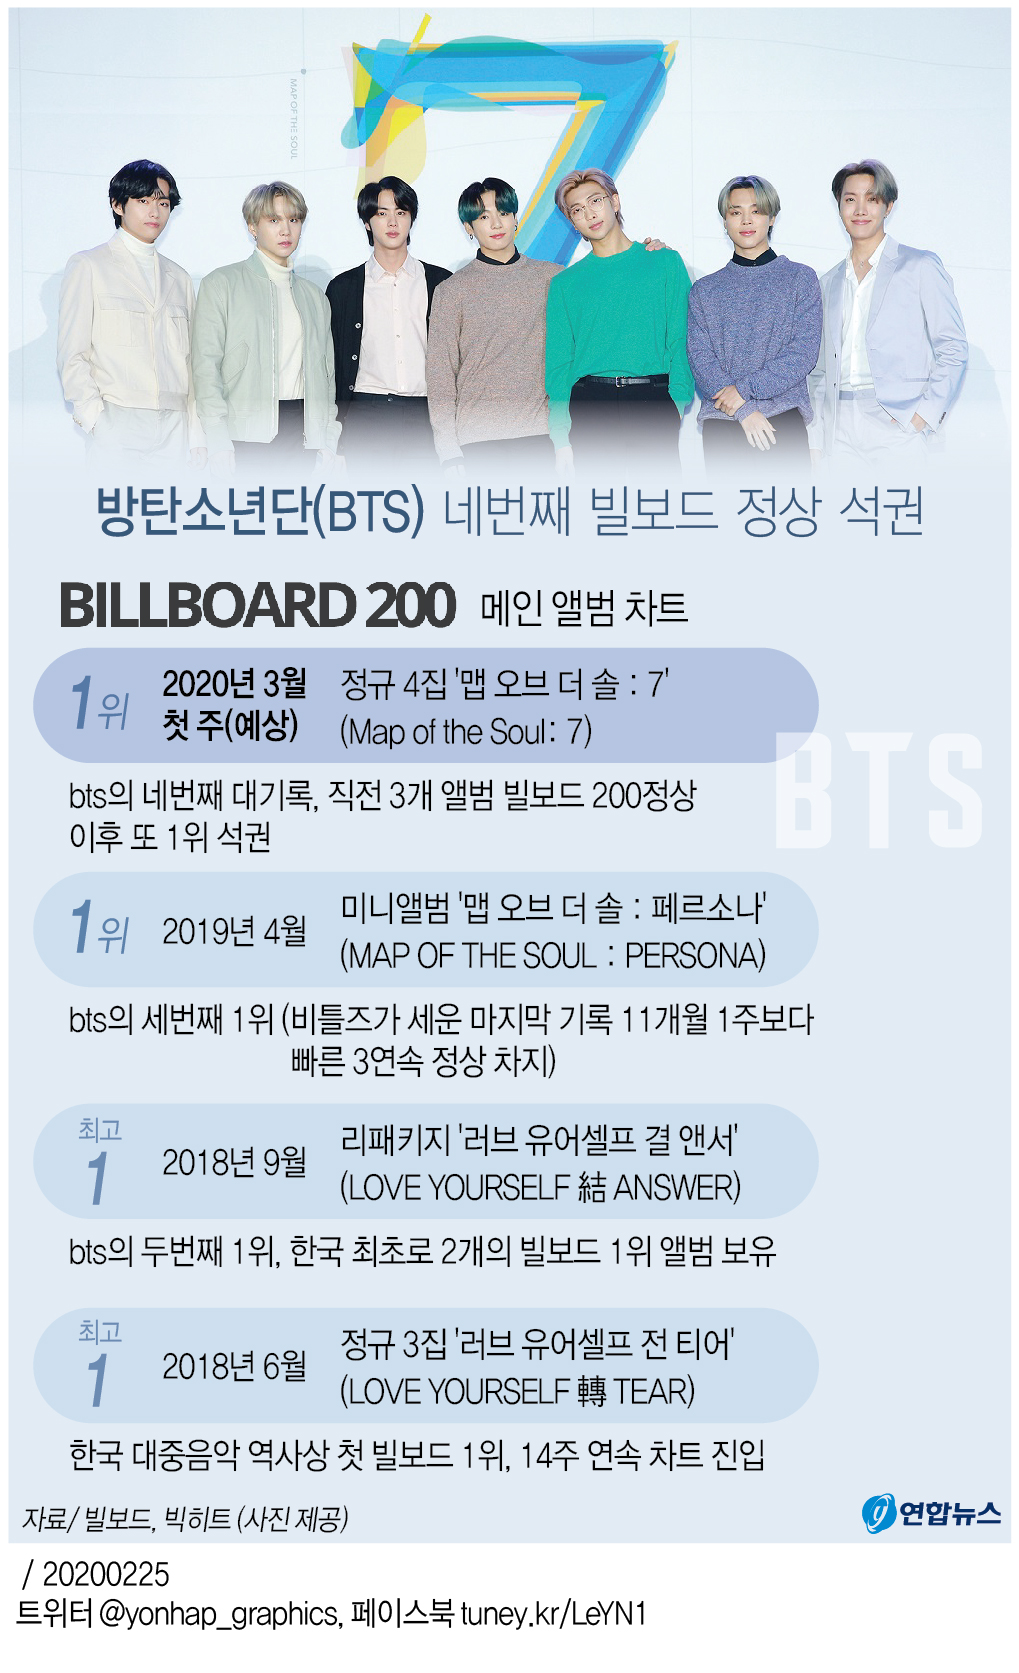 [그래픽] 방탄소년단(BTS) 네번째 빌보드 정상 석권